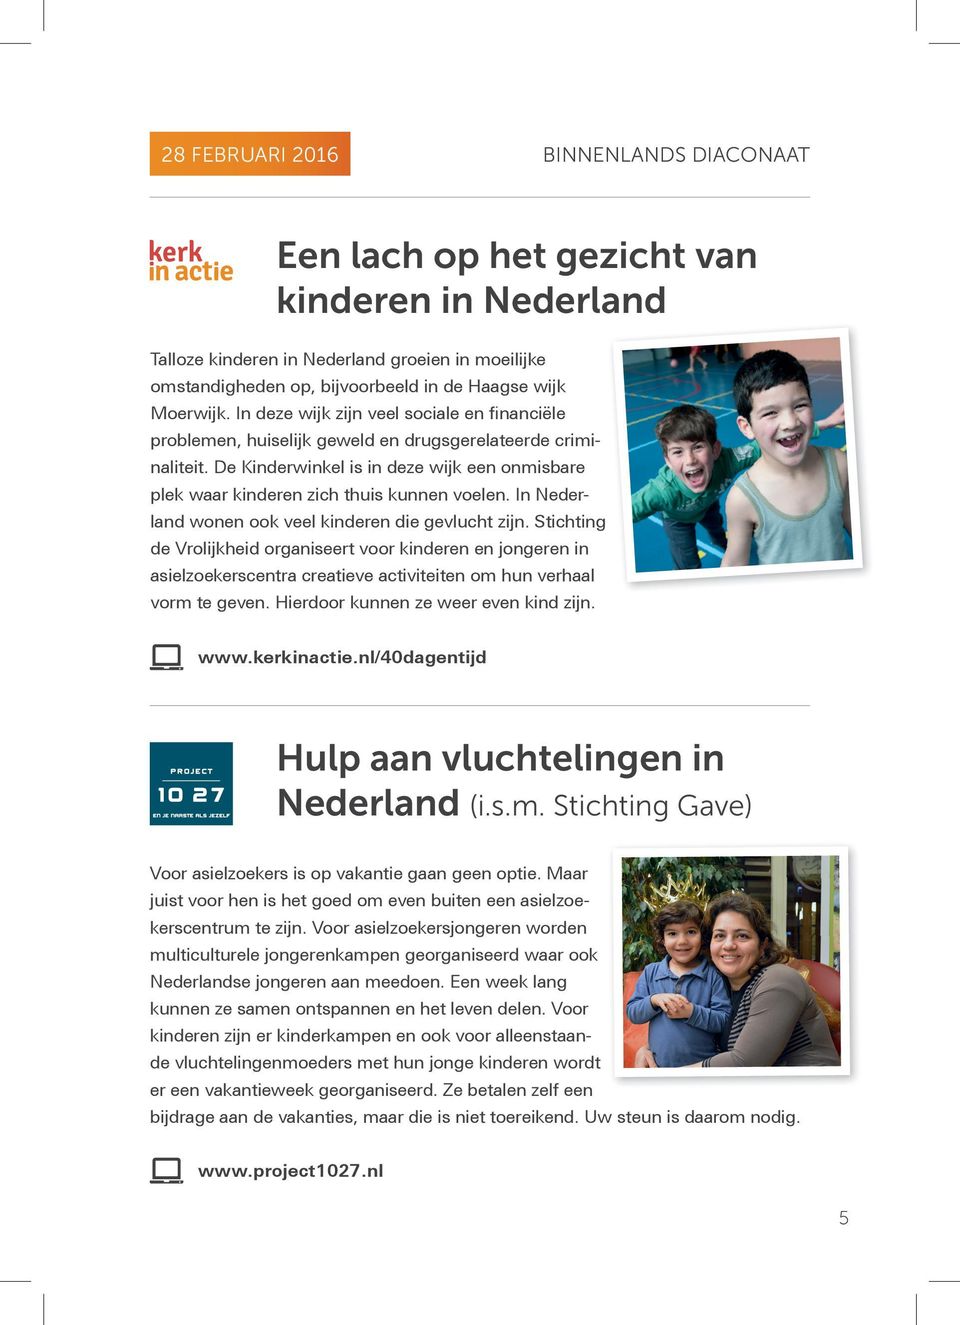 In Nederland wonen ook veel kinderen die gevlucht zijn. Stichting de Vrolijkheid organiseert voor kinderen en jongeren in asielzoekerscentra creatieve activiteiten om hun verhaal vorm te geven.